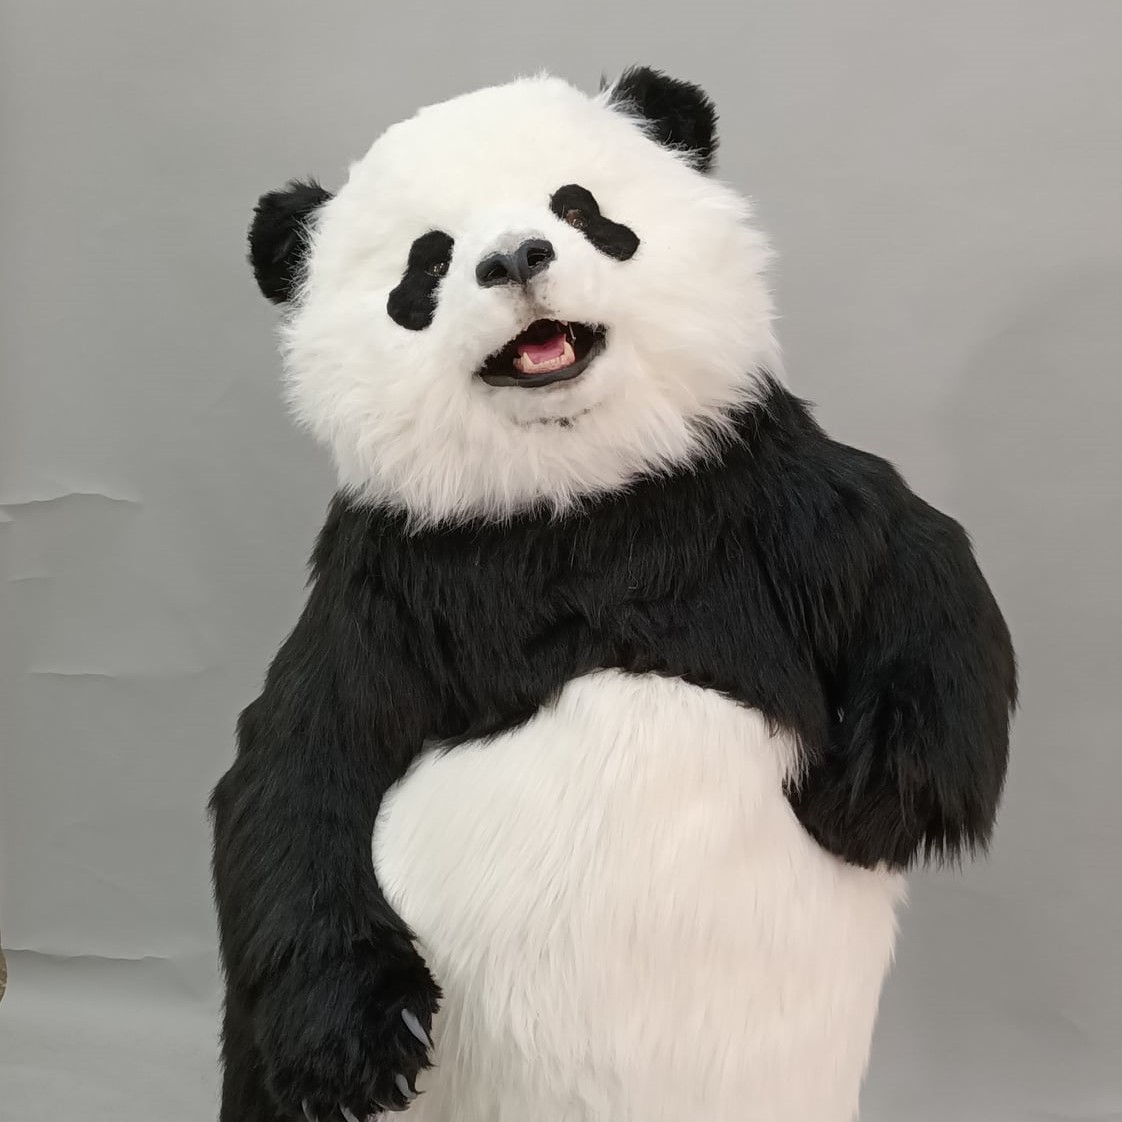 魔人社2020 HOLA熊貓人偶裝製作 animatronic panda costume